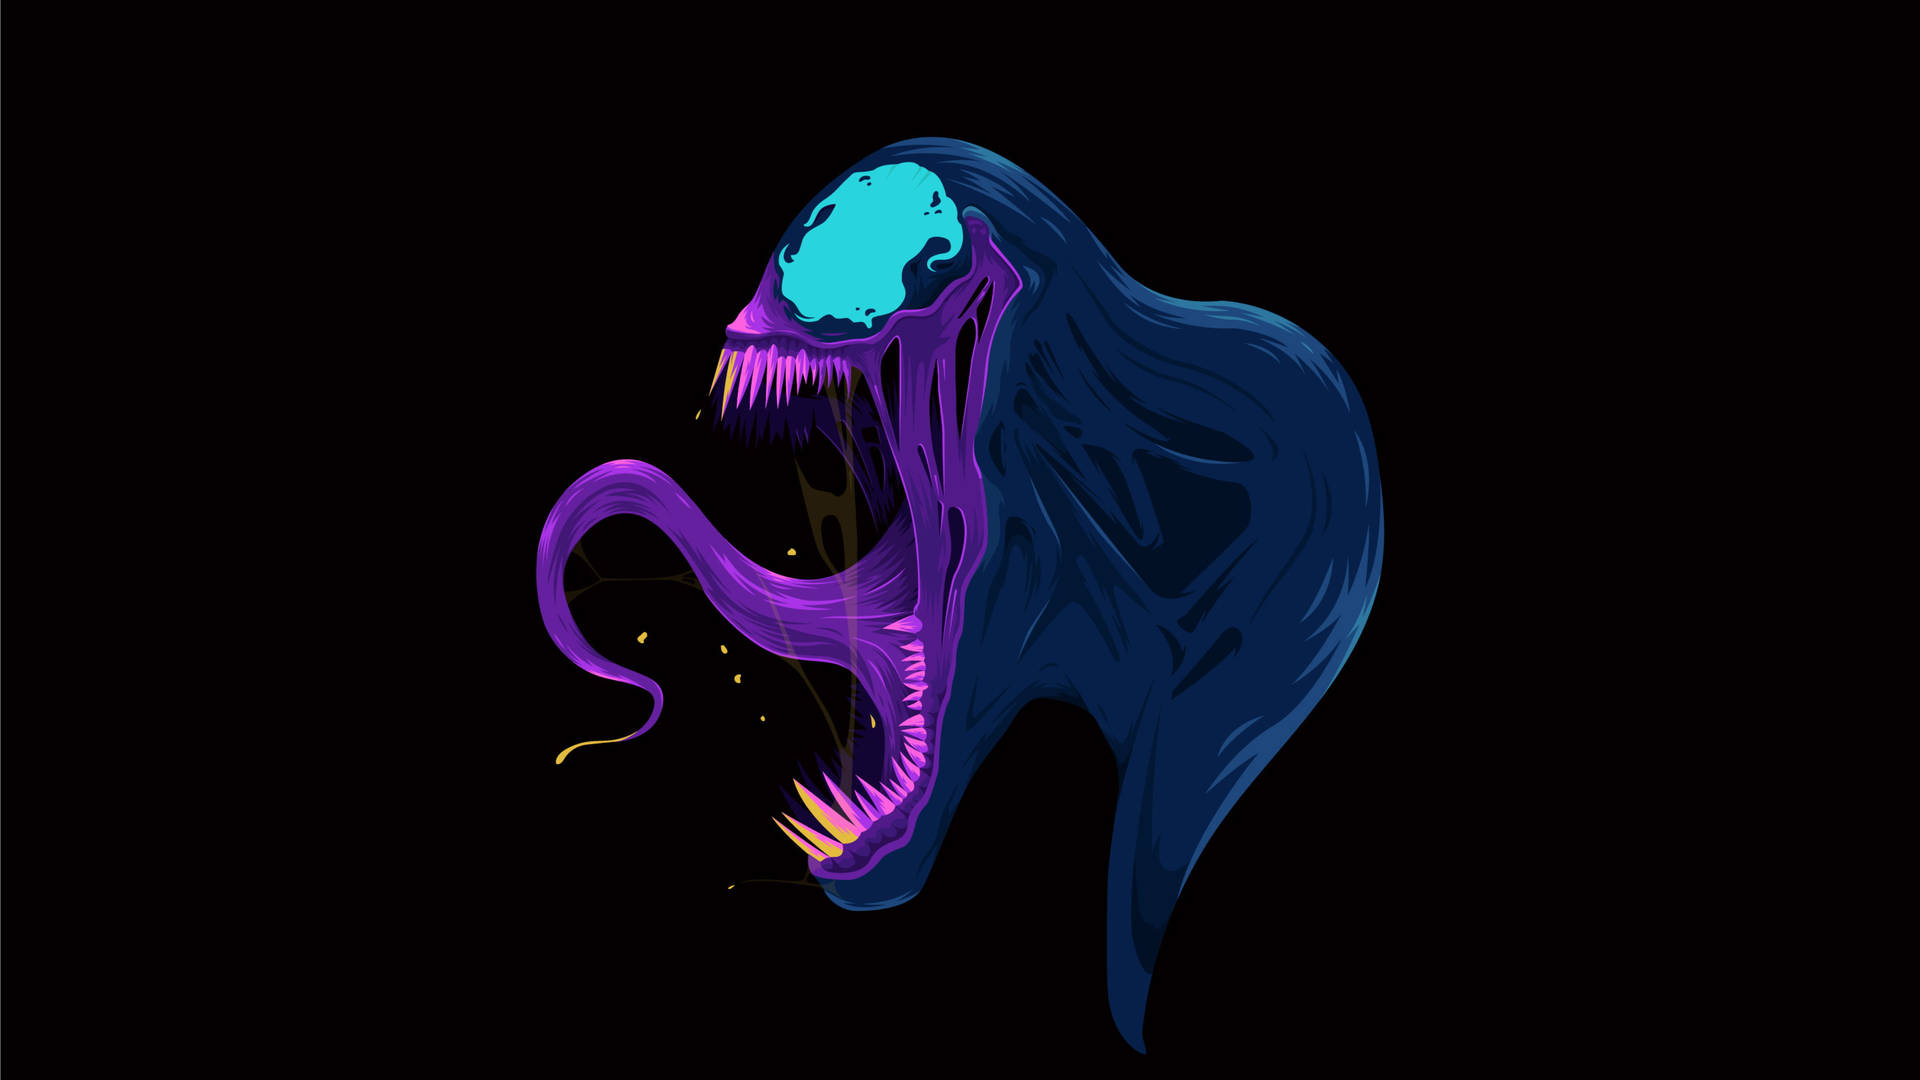 4kvektor Venom-huvud. Wallpaper